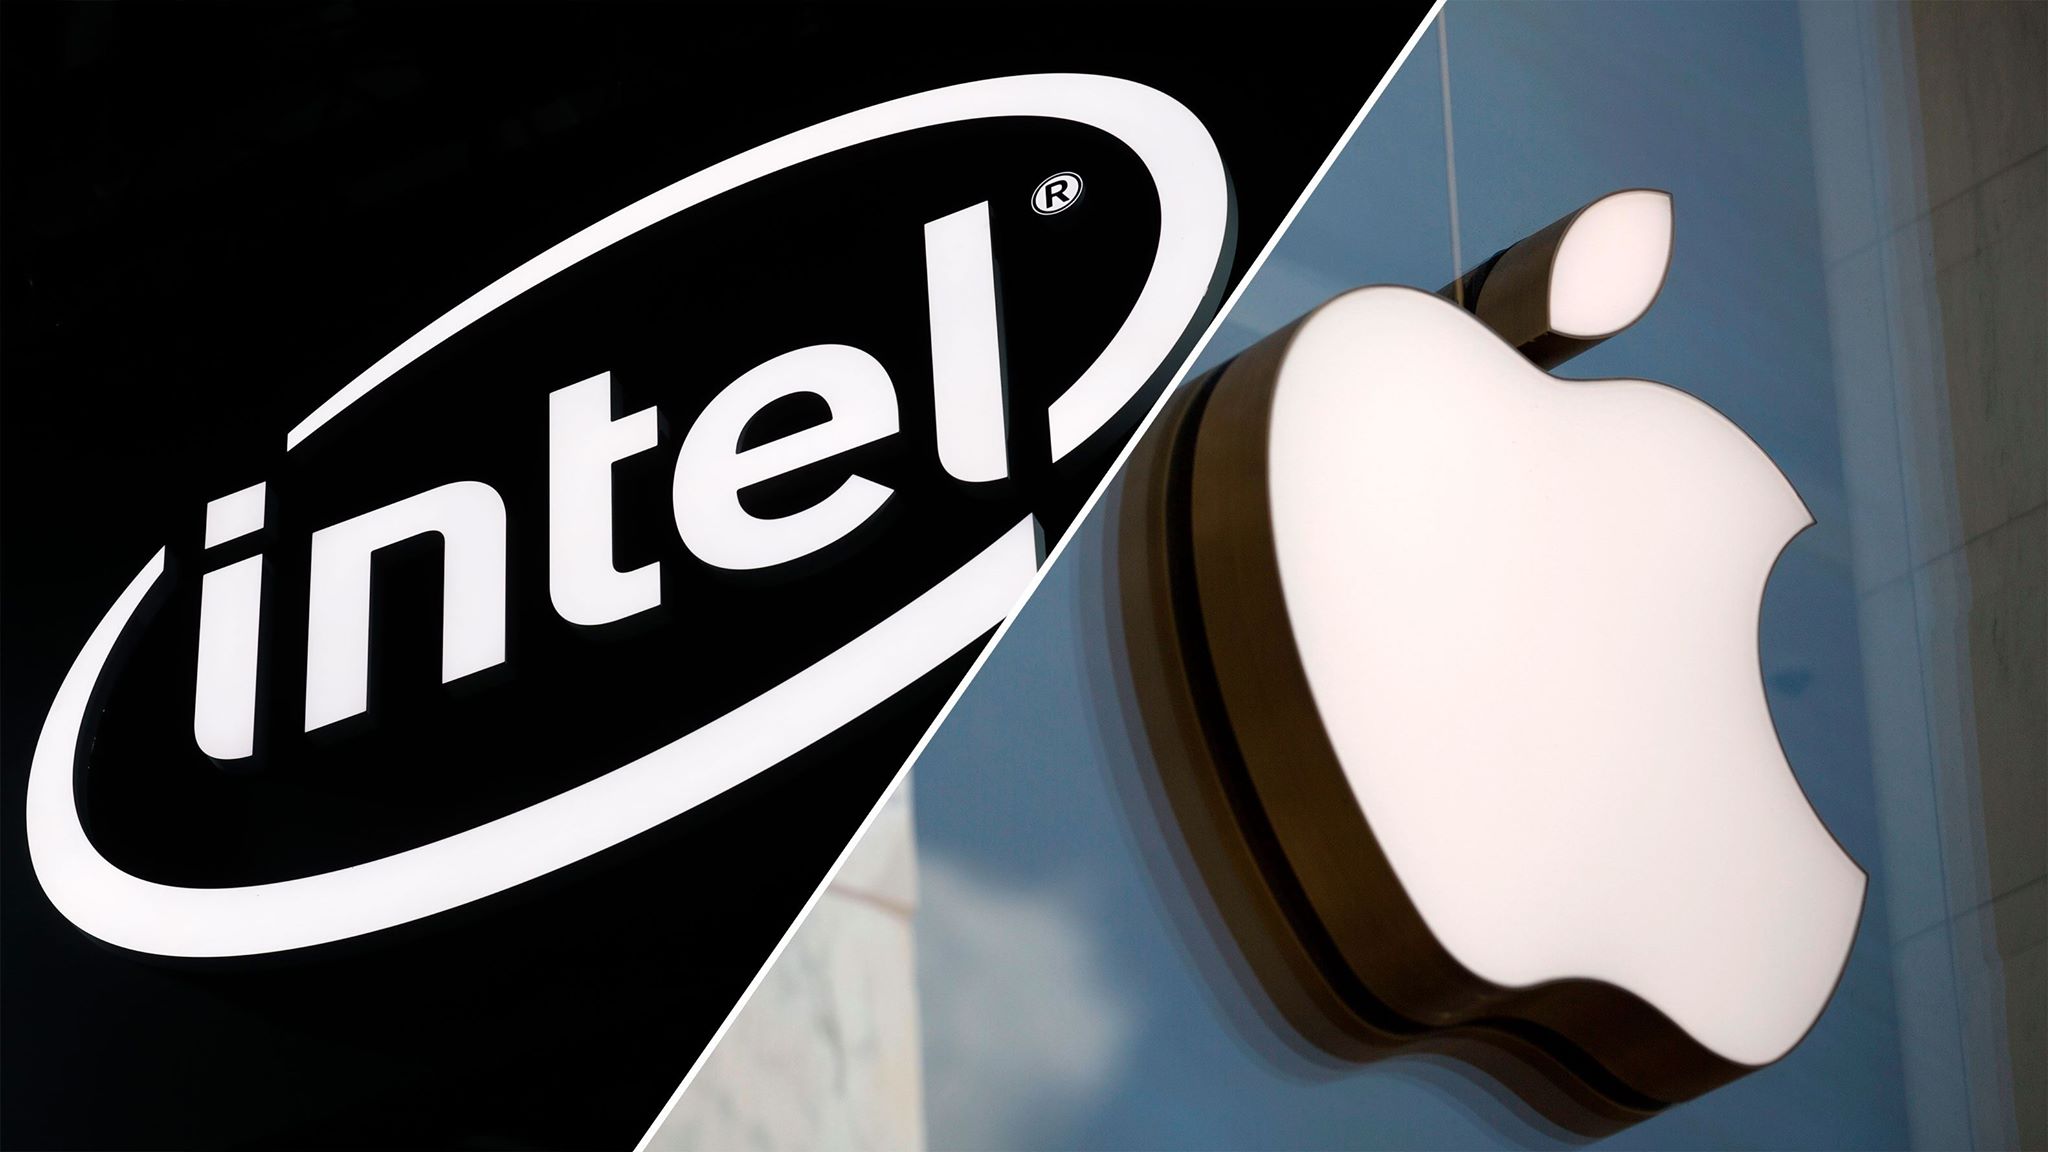 Apple chính thức mua lại mảng kinh doanh chip mạng cho smartphone của Intel